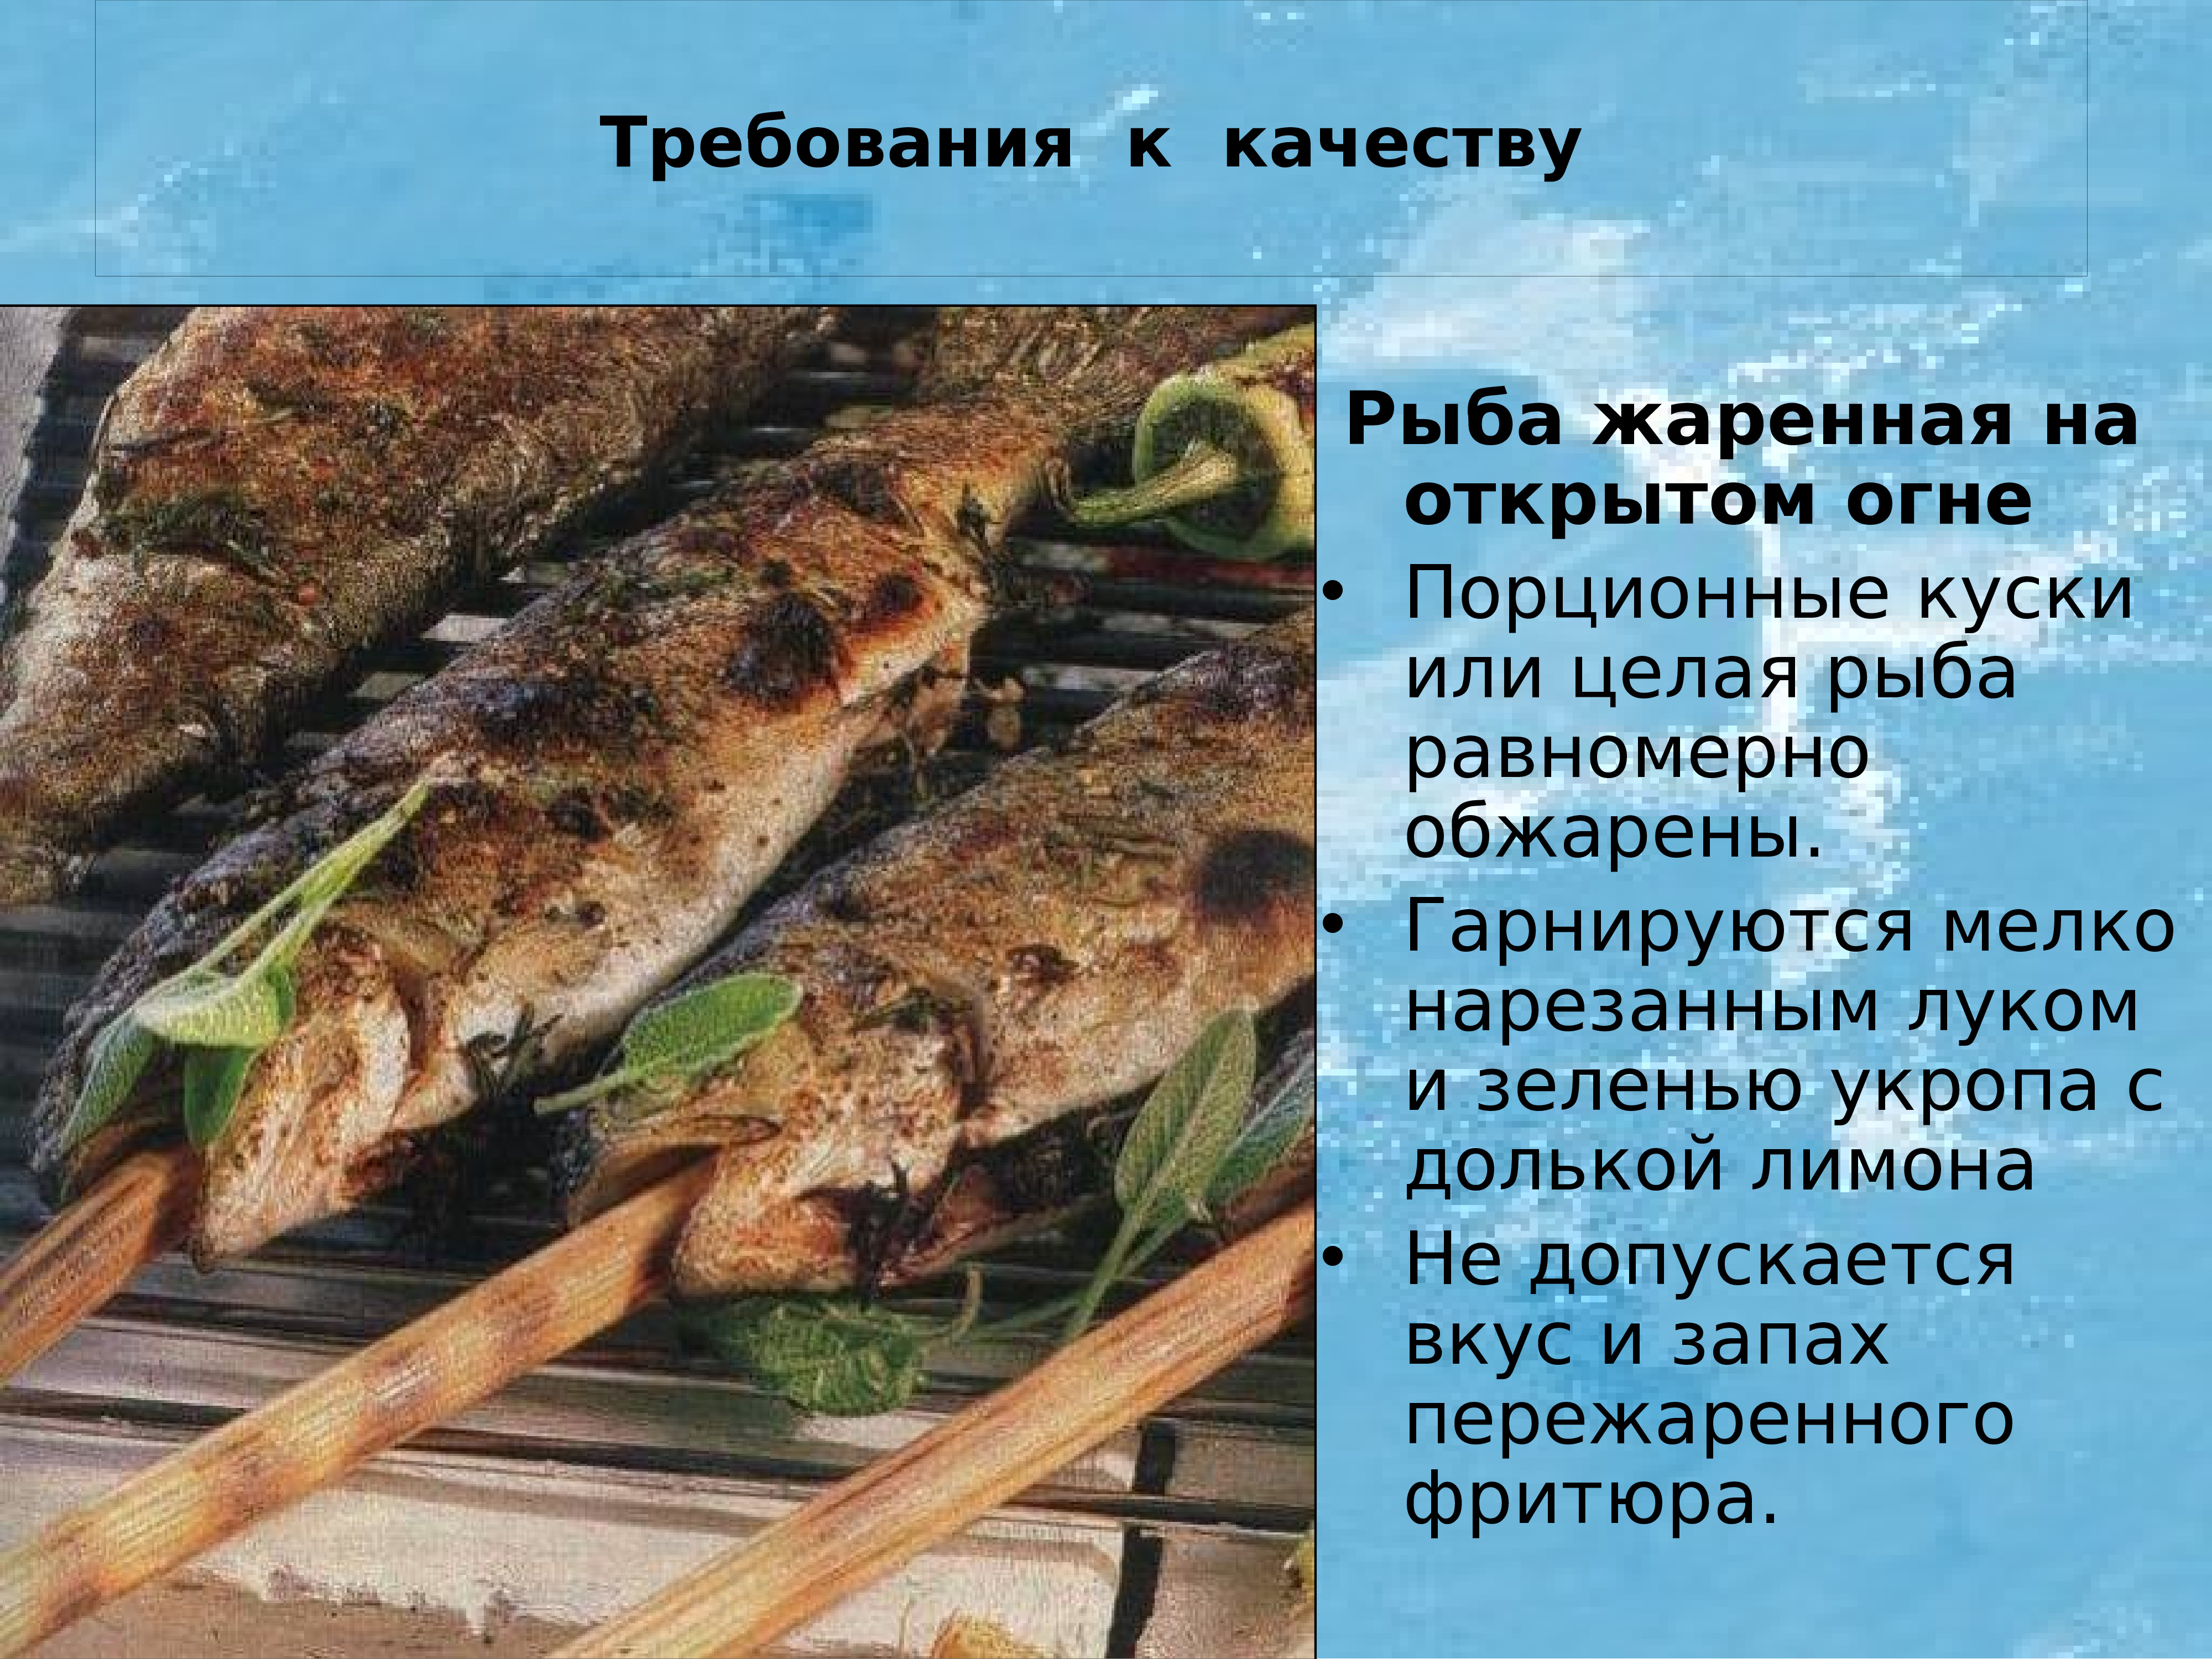 Требования к блюдам из рыбы